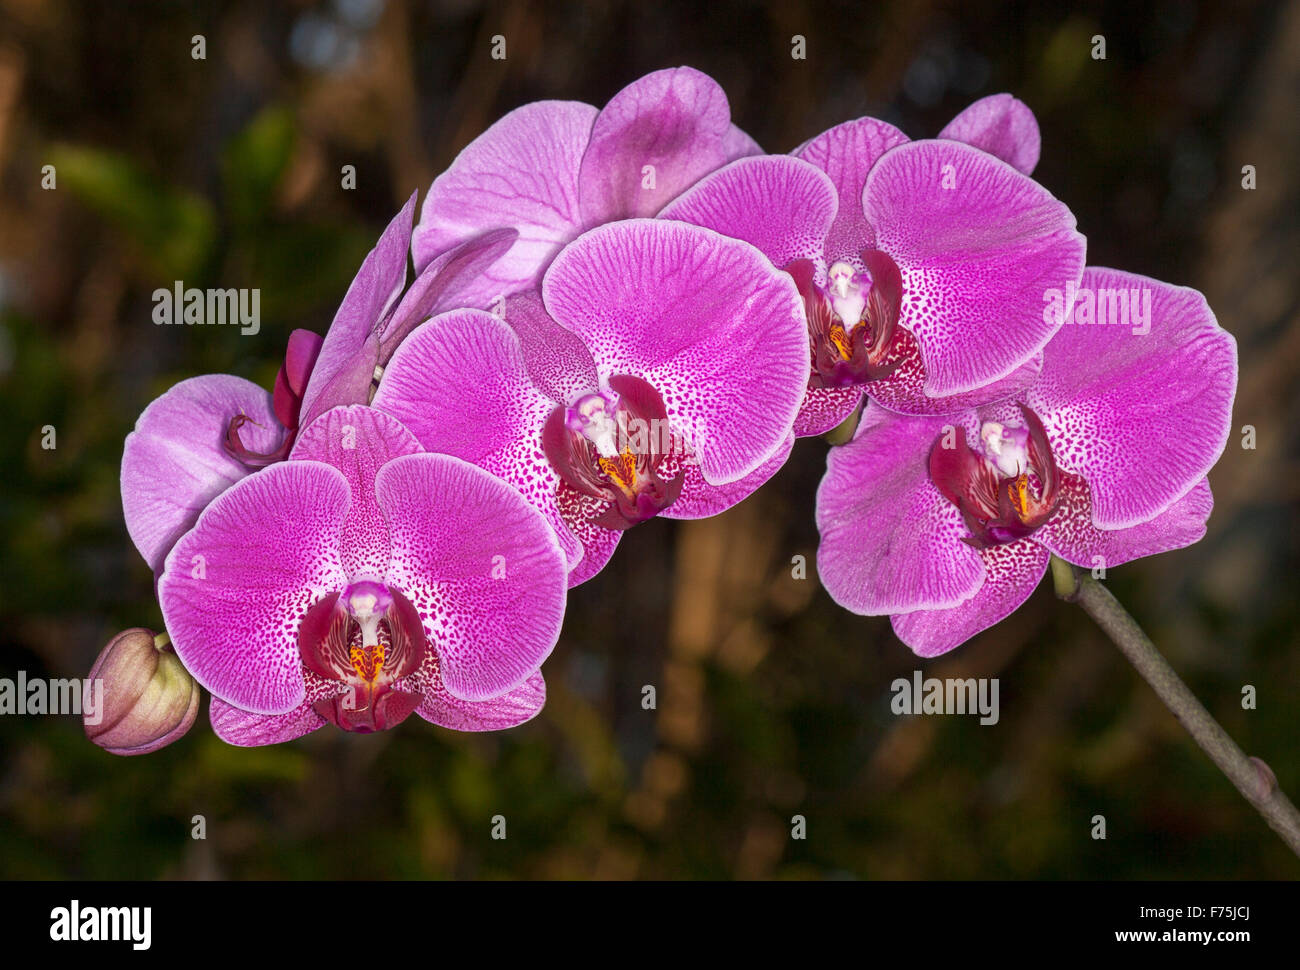 Pulvérisation de grandes fleurs violettes / magenta vif avec gorge tachetée de blanc Phalaenopsis orchidée papillon sur un fond sombre Banque D'Images